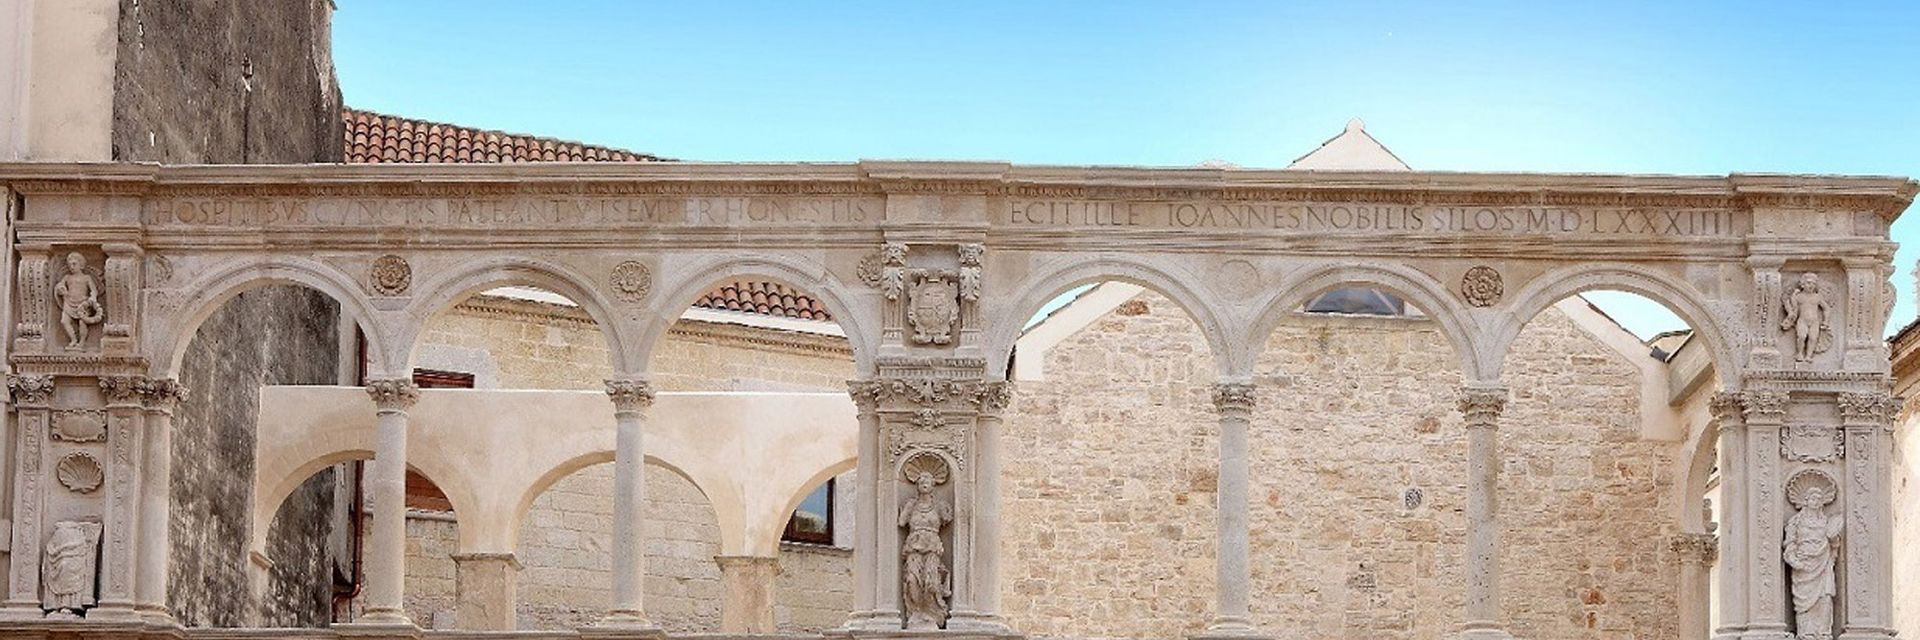 Galería Nacional de Puglia